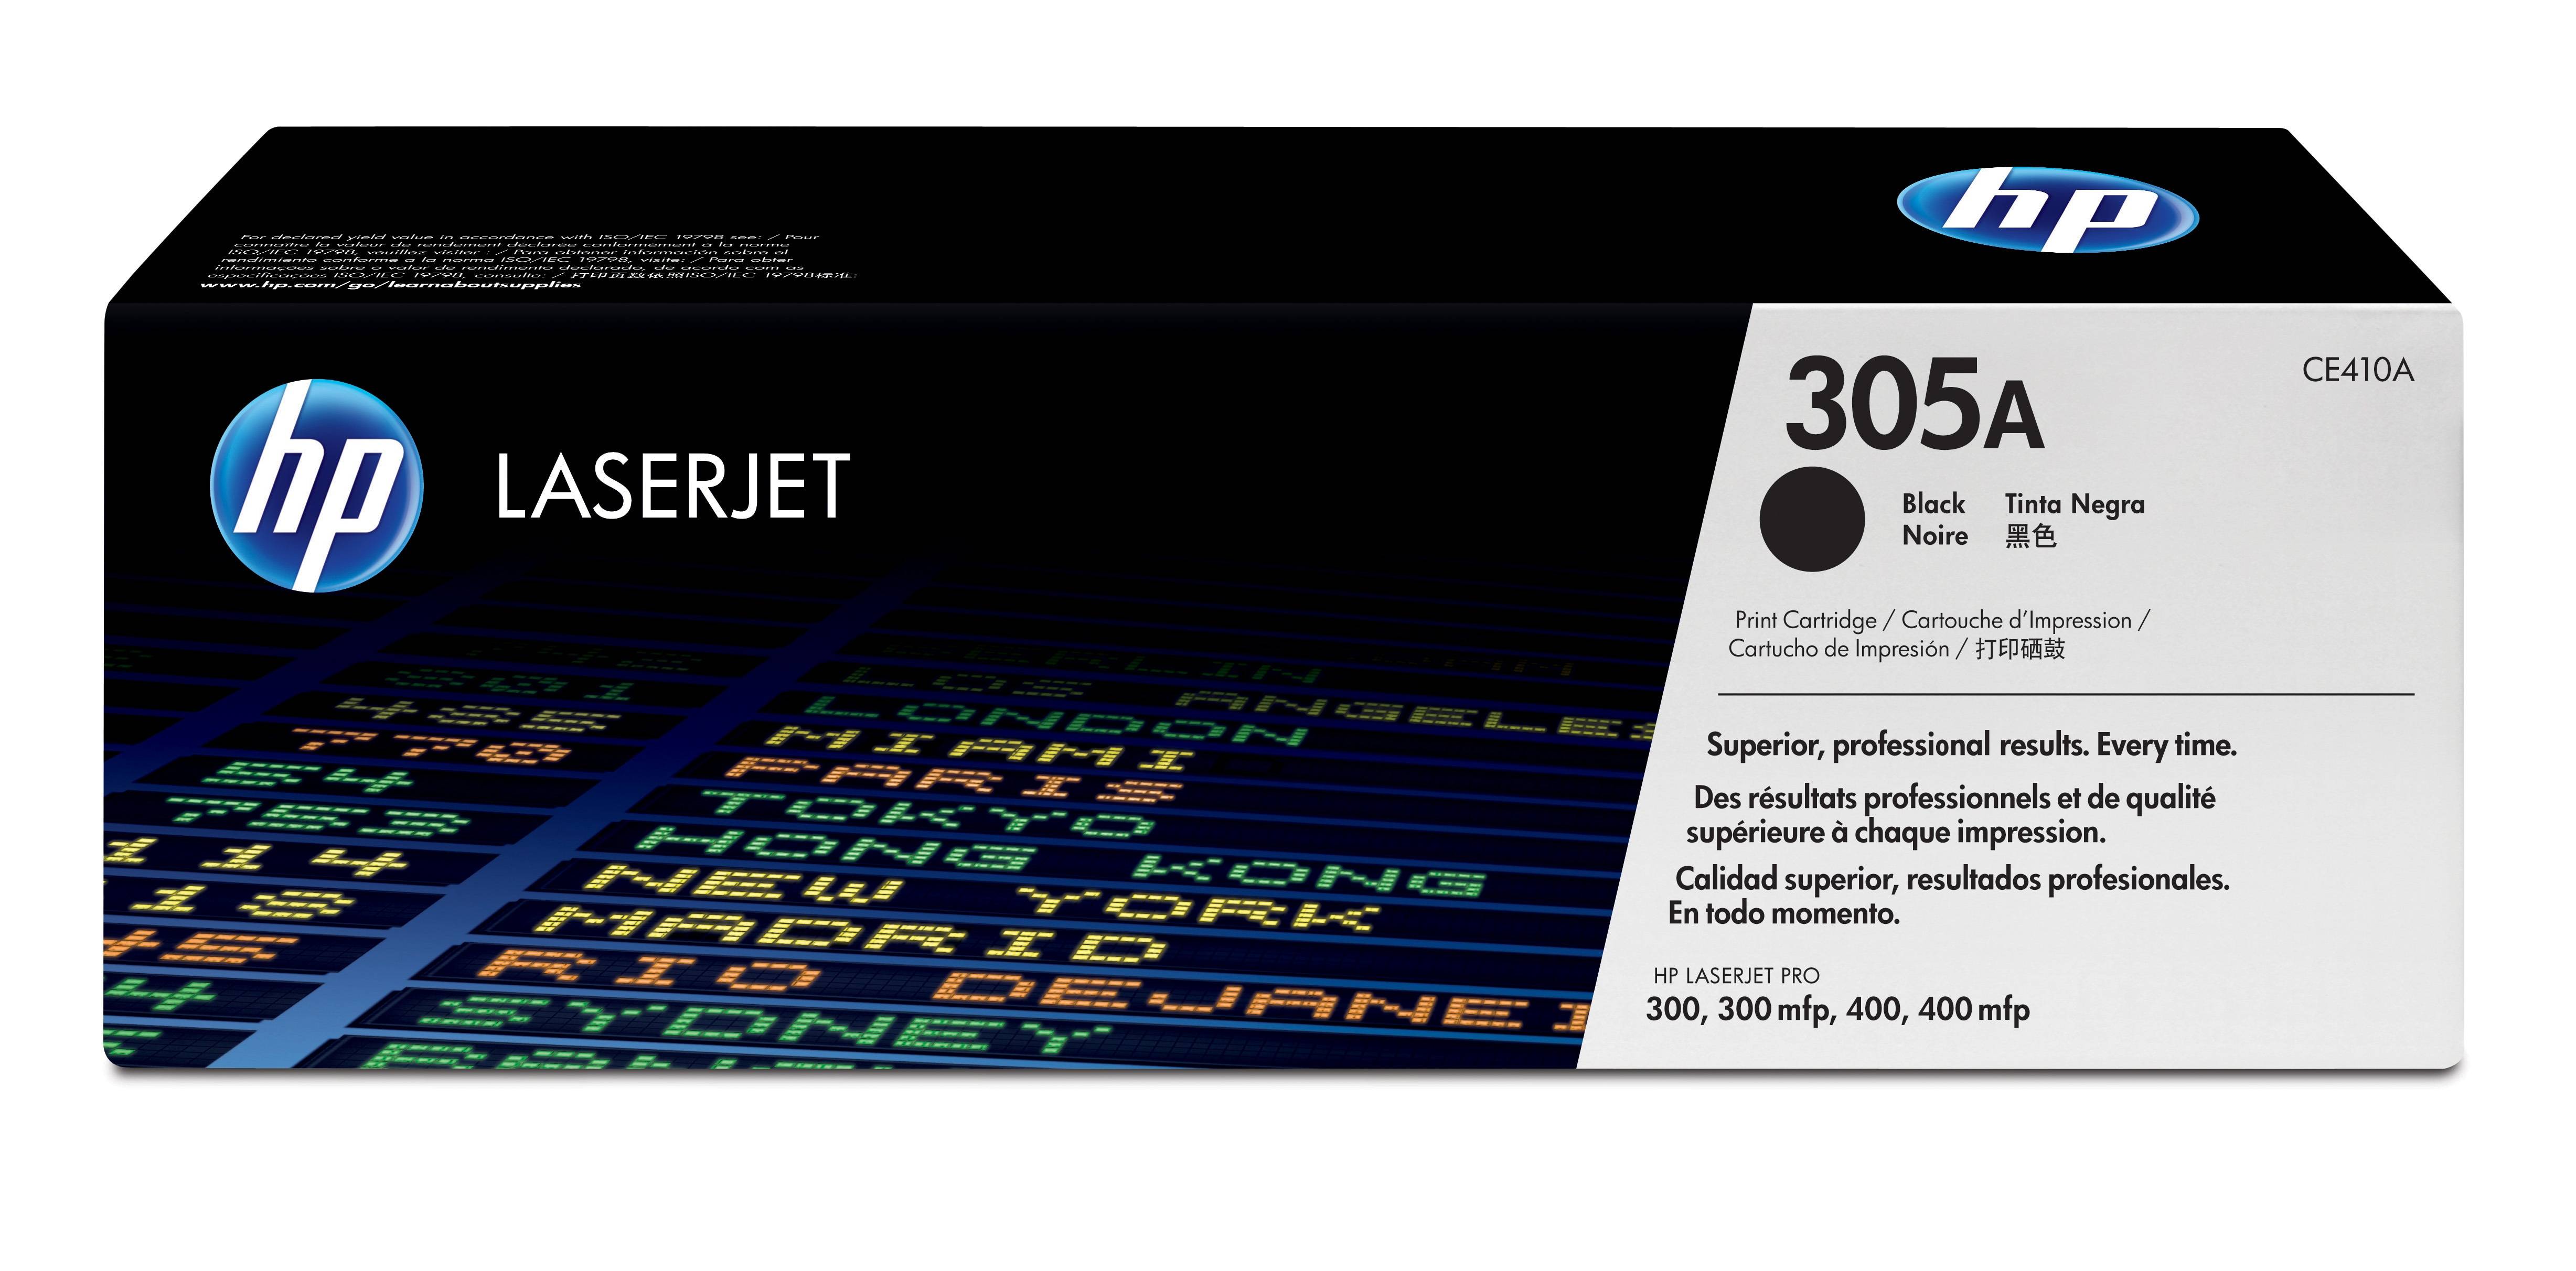 Rca Informatique - Image du produit : TONER CARTRIDGE 305A BLACK BLACK LASERJET